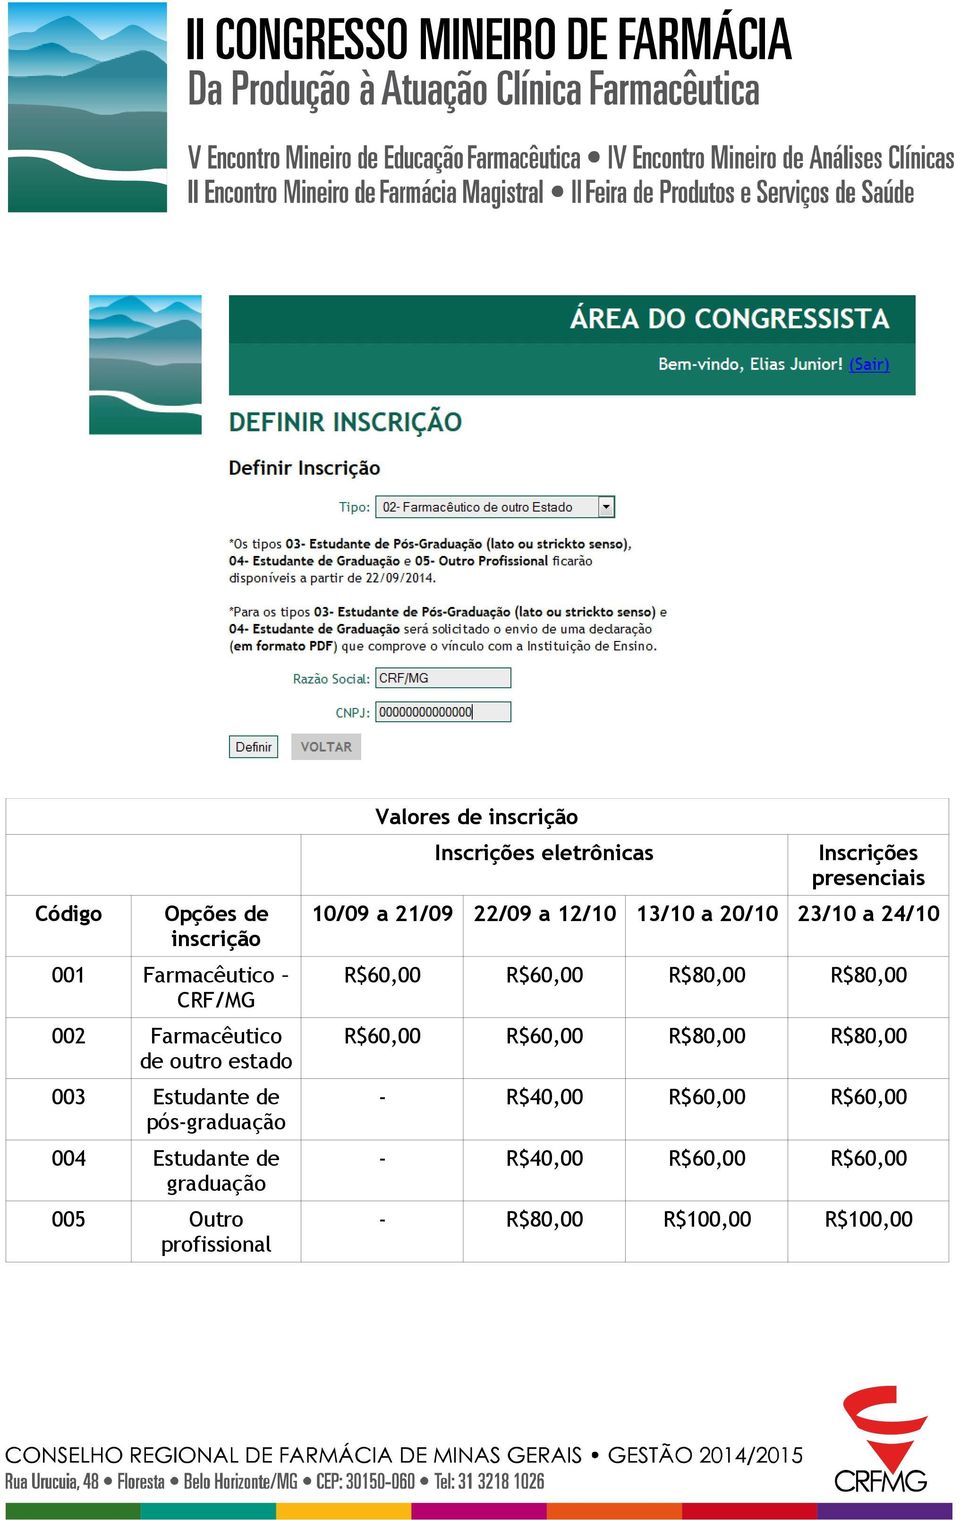 Farmacêutico de outro estado R$60,00 R$60,00 R$80,00 R$80,00 003 Estudante de pós-graduação - R$40,00